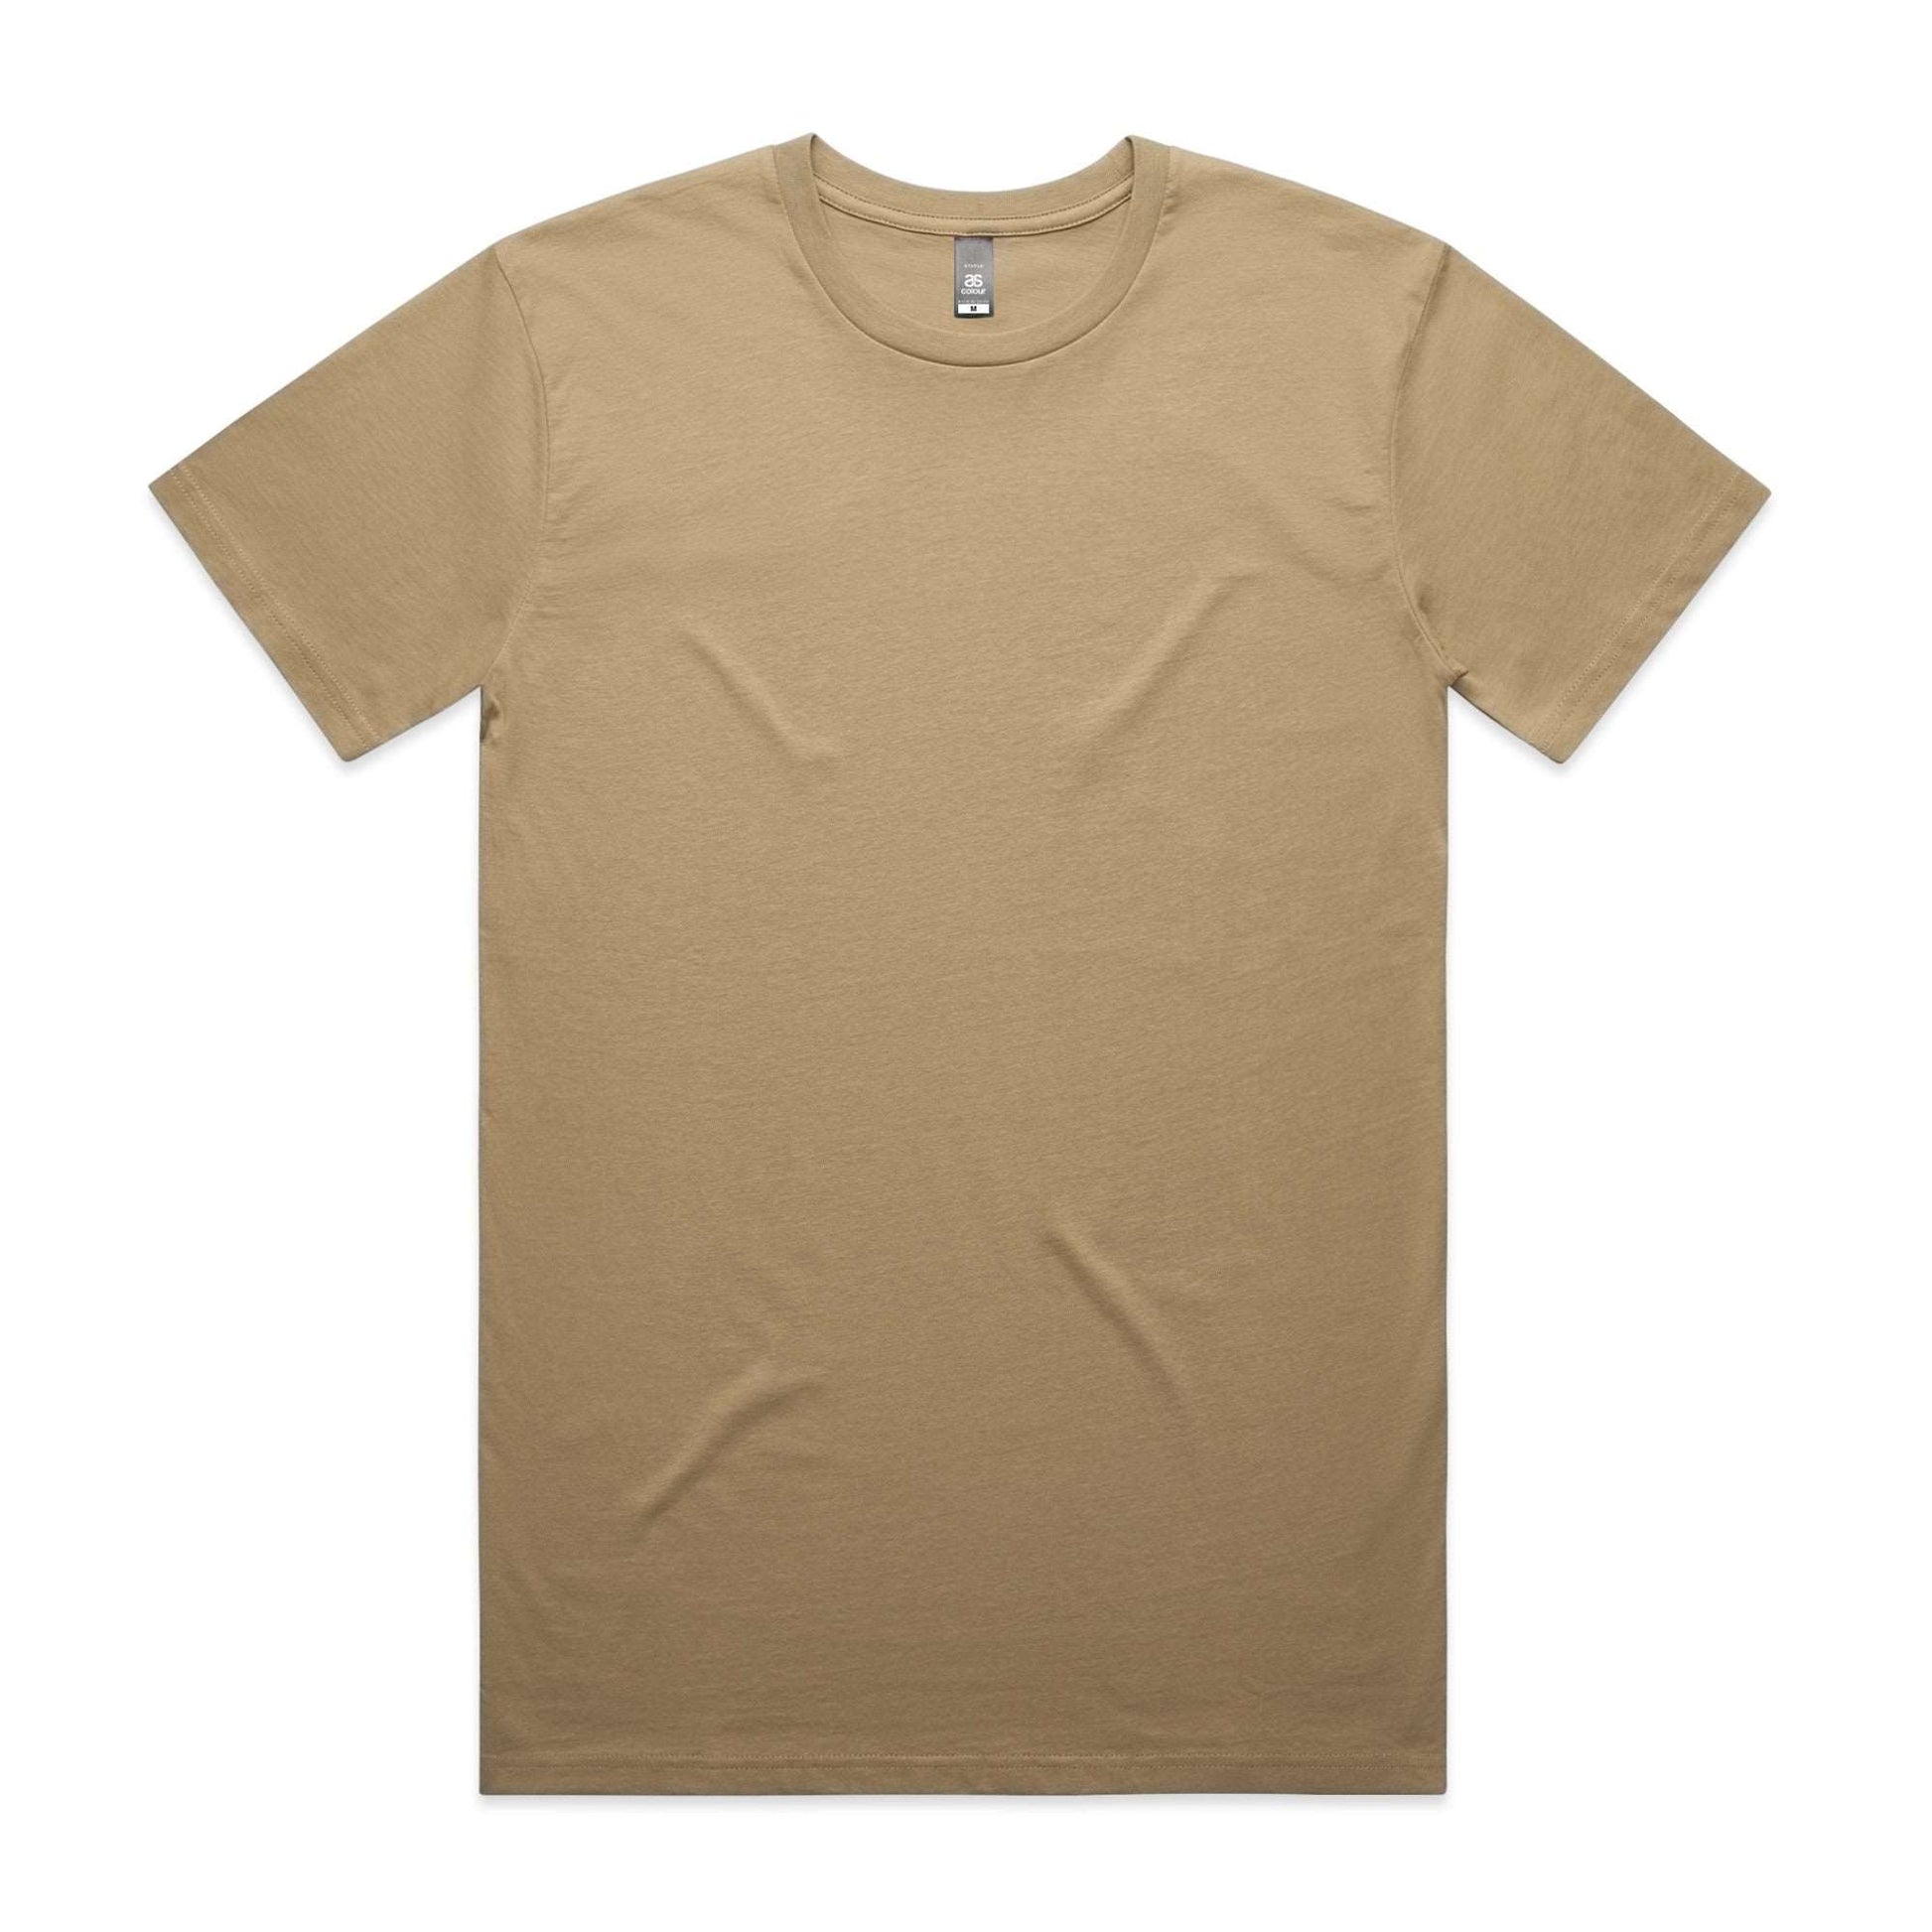 5001 - High Quality Tshirt - Plus Size